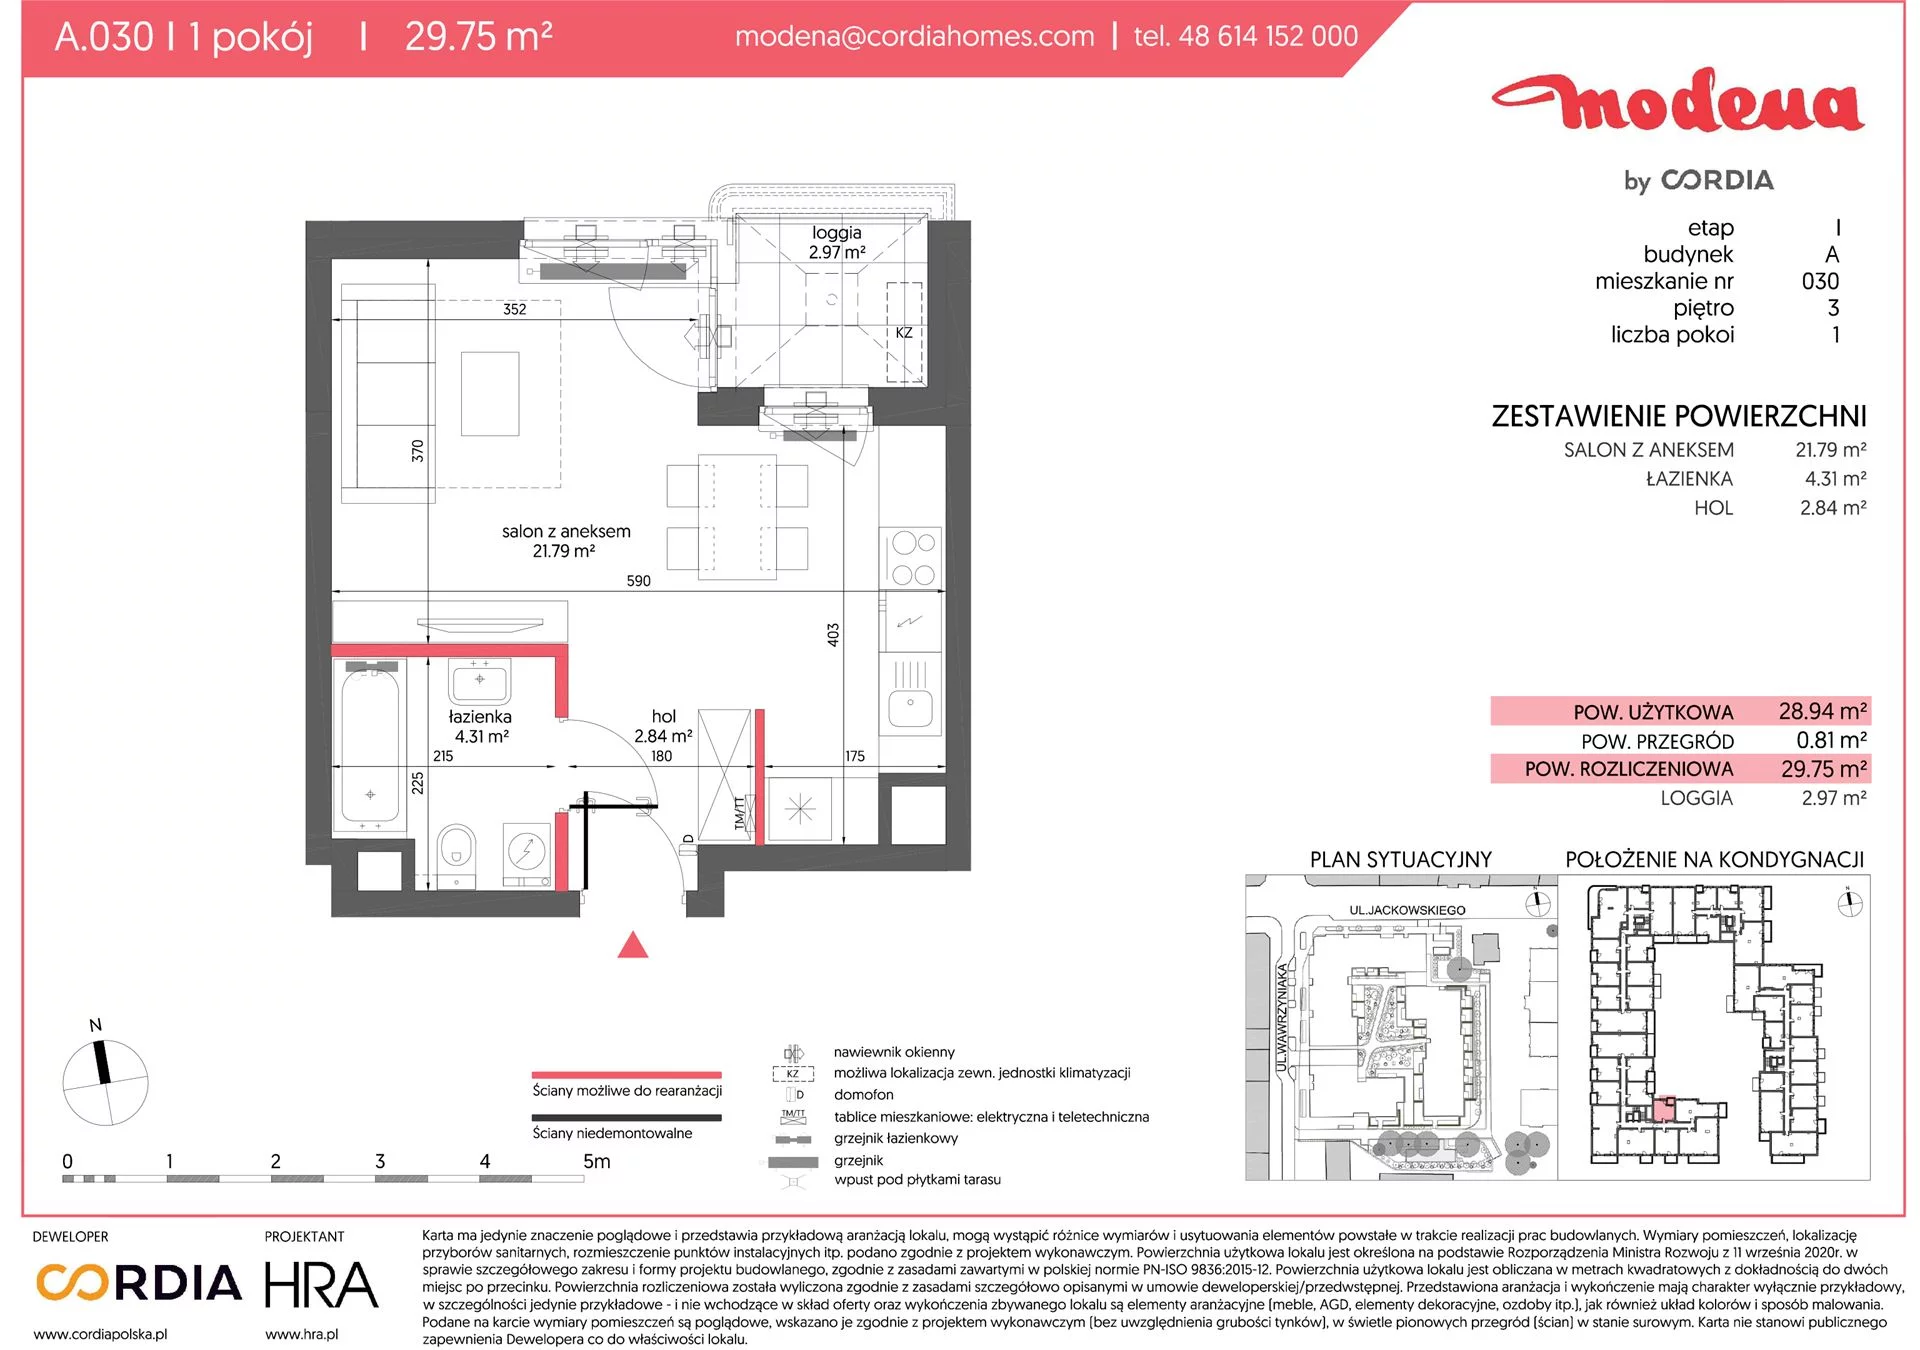 Mieszkanie 29,75 m², piętro 3, oferta nr A.030, Modena, Poznań, Jeżyce, Jeżyce, ul. Jackowskiego 24